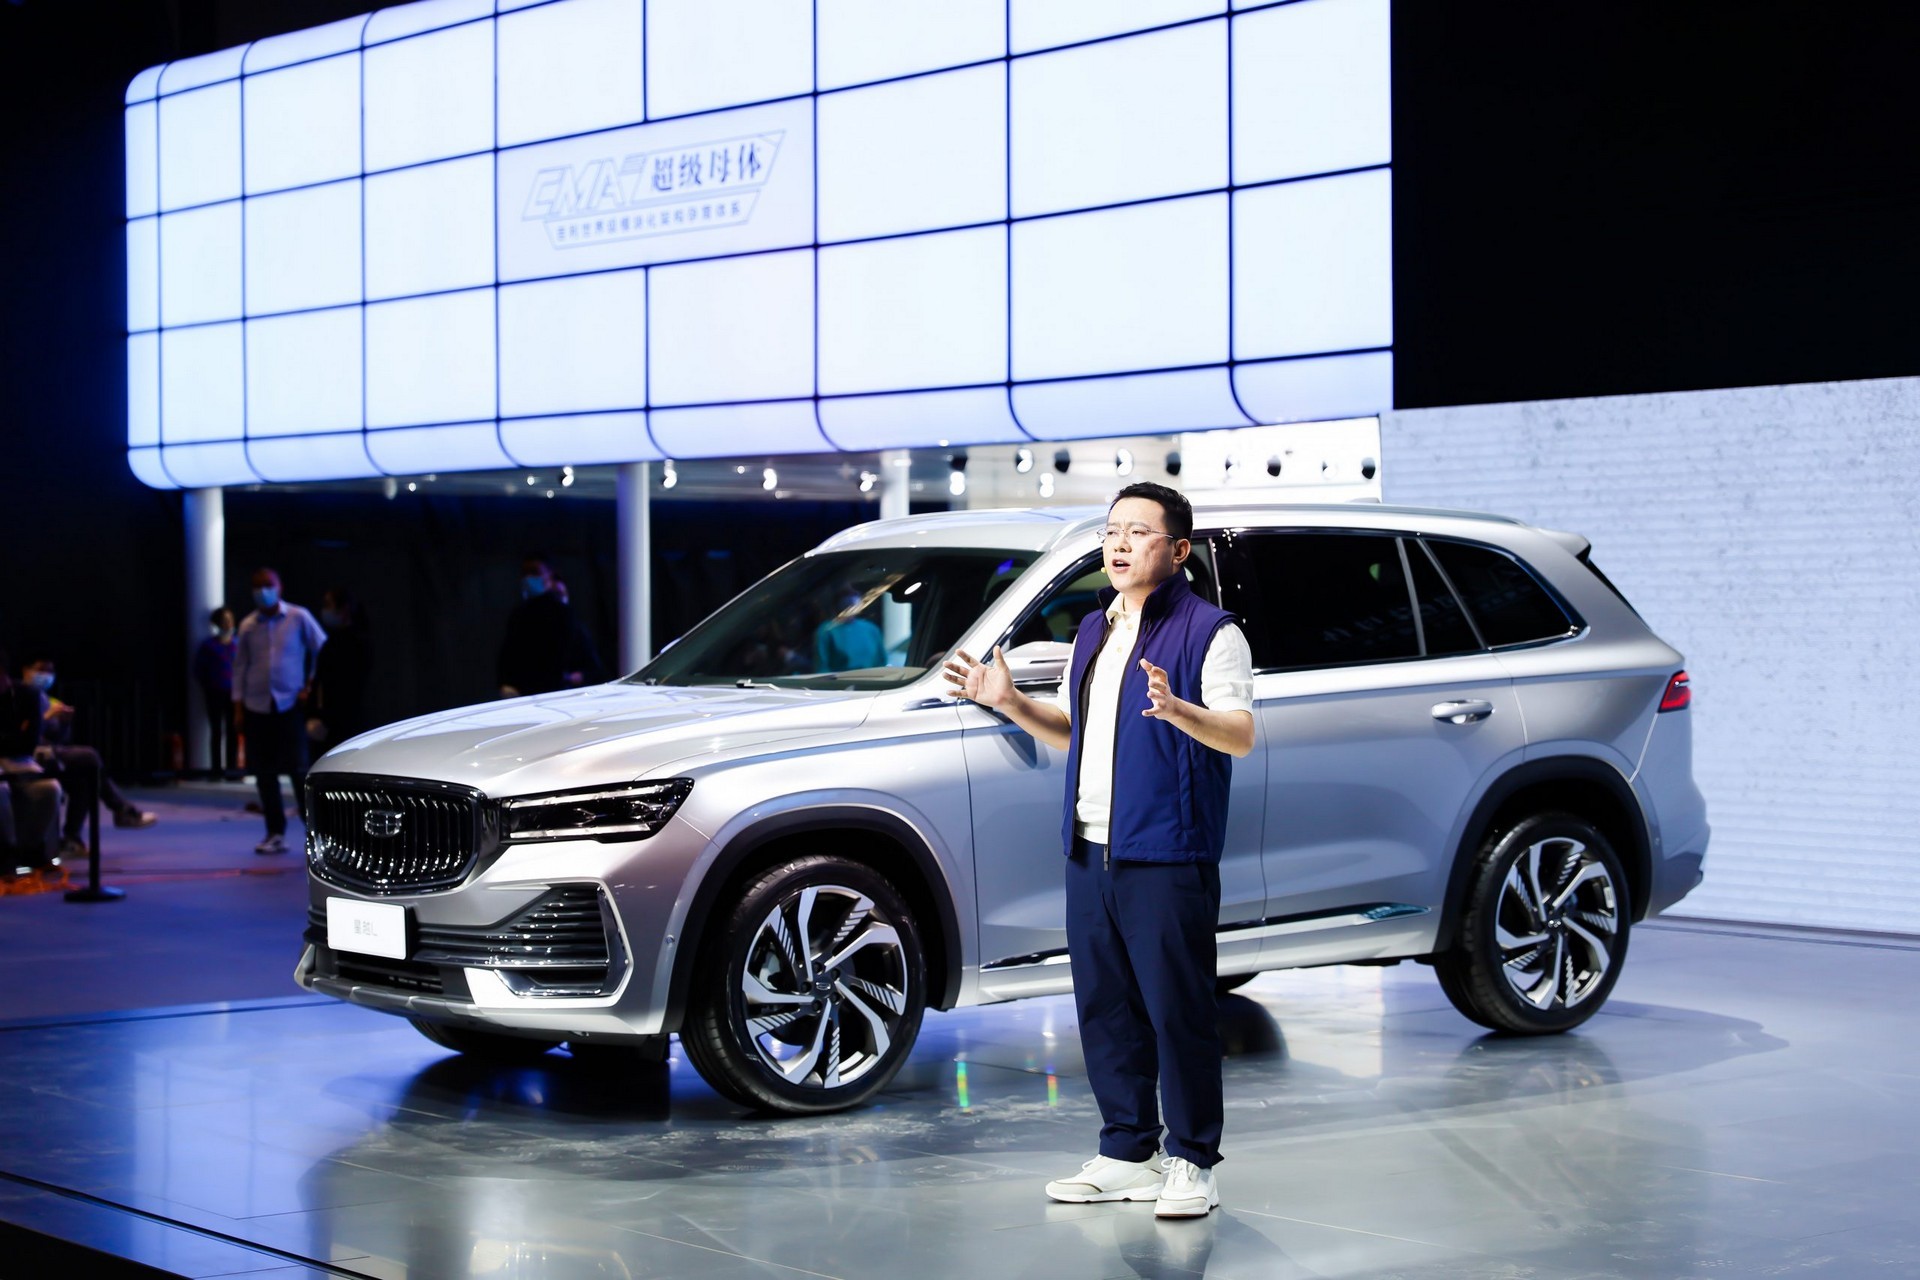 Geely: Китайский бренд с мировыми амбициями - Инновации и качество, воплощенные в каждом автомобиле